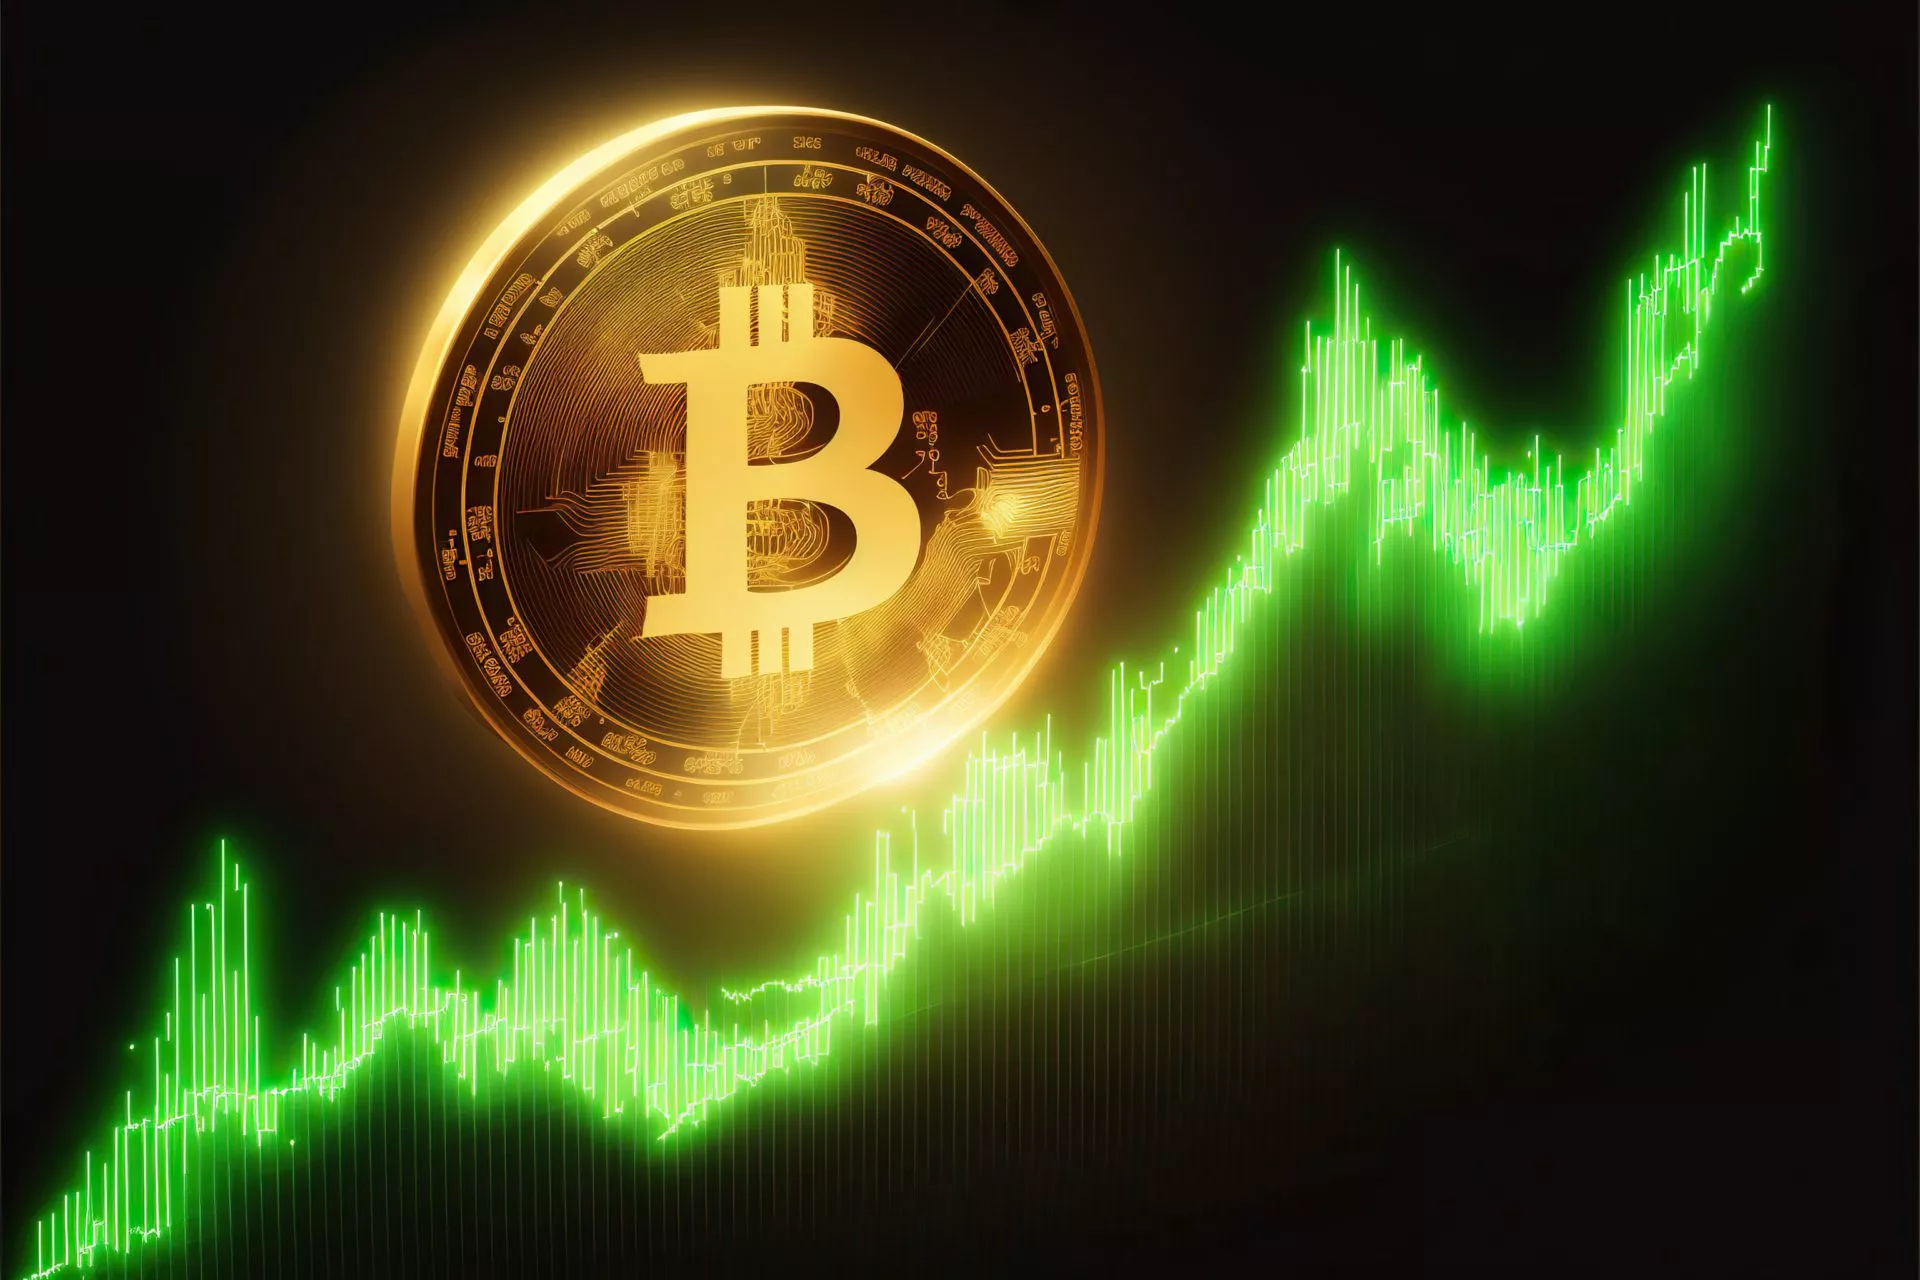 Novogratz: Zou niet gek zijn als Bitcoin dit kwartaal prijs van $30.000 bereikt